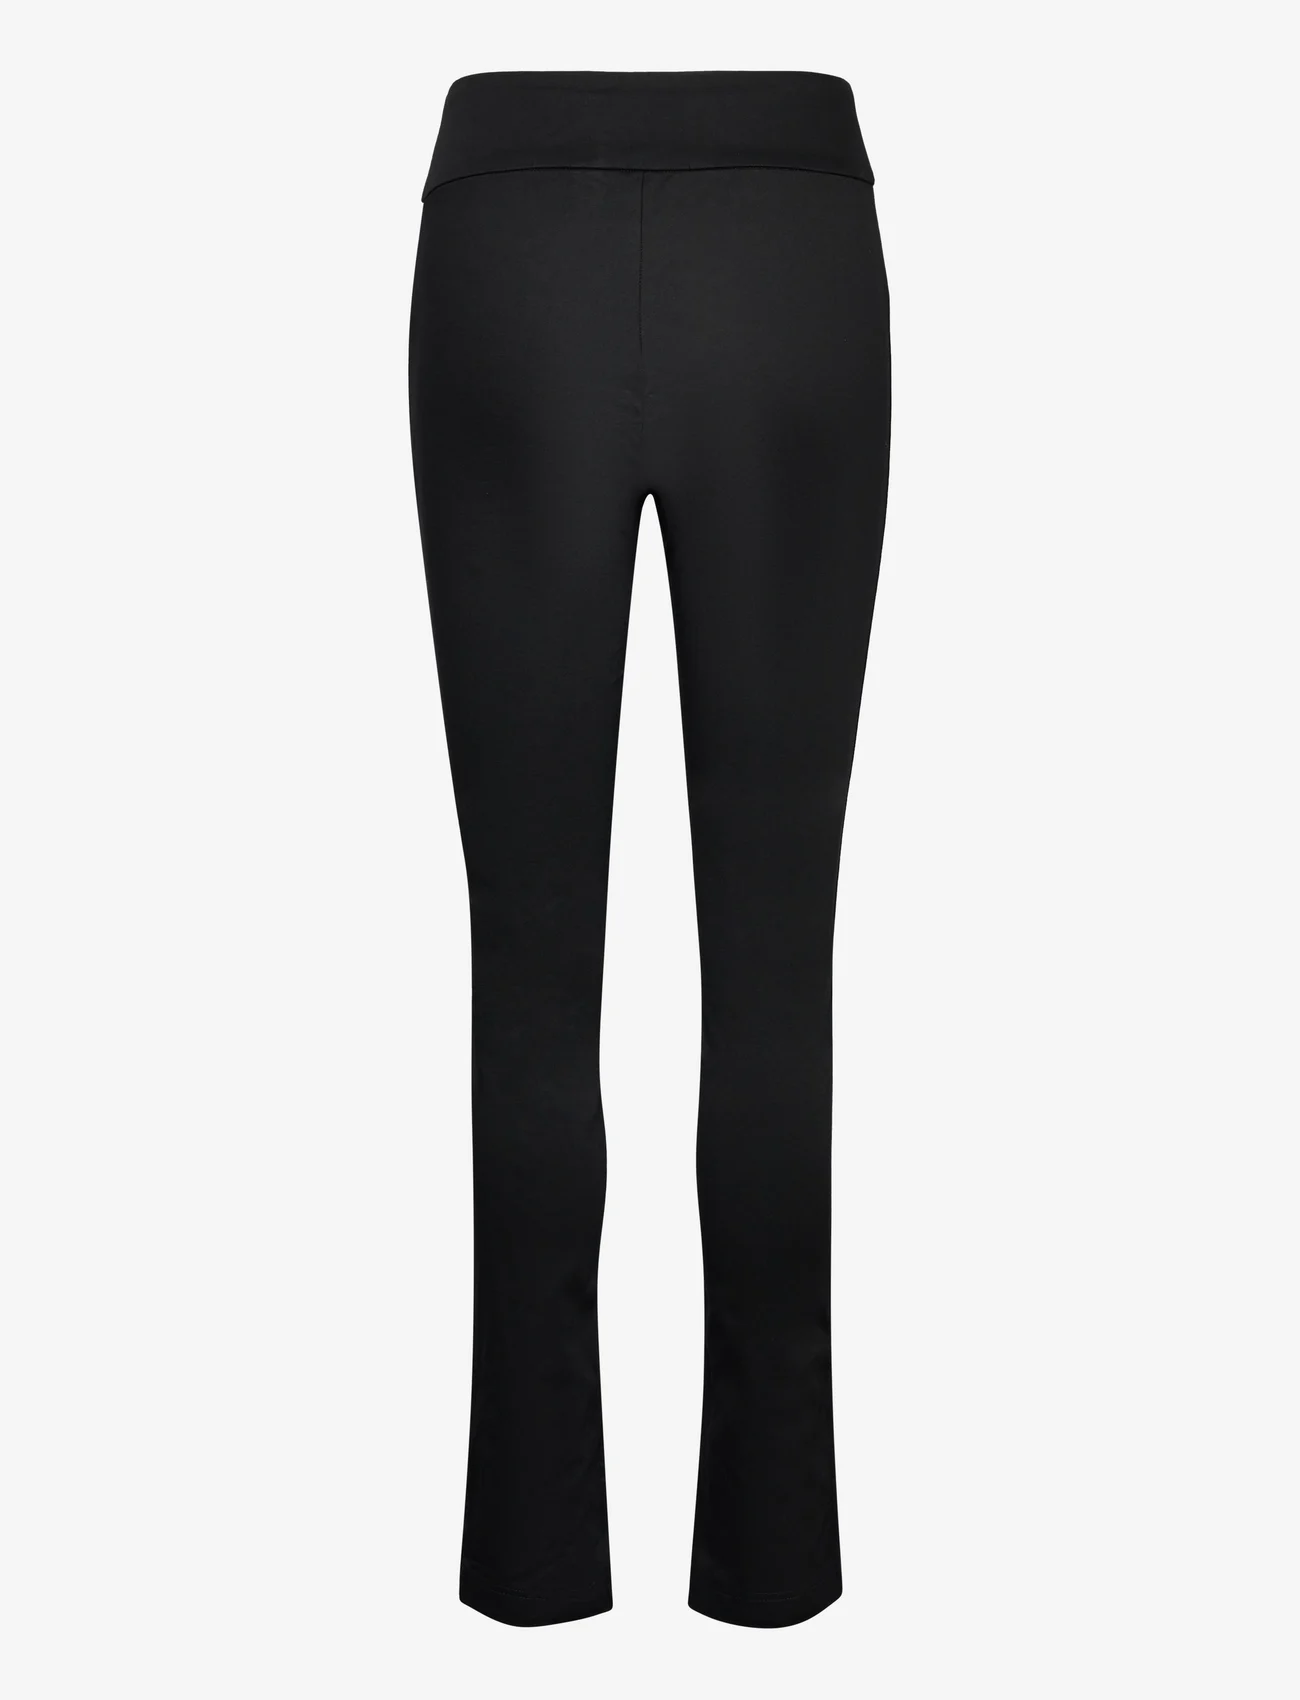 Rosemunde - Trousers w/ slit - slim-fit broeken - black - 1